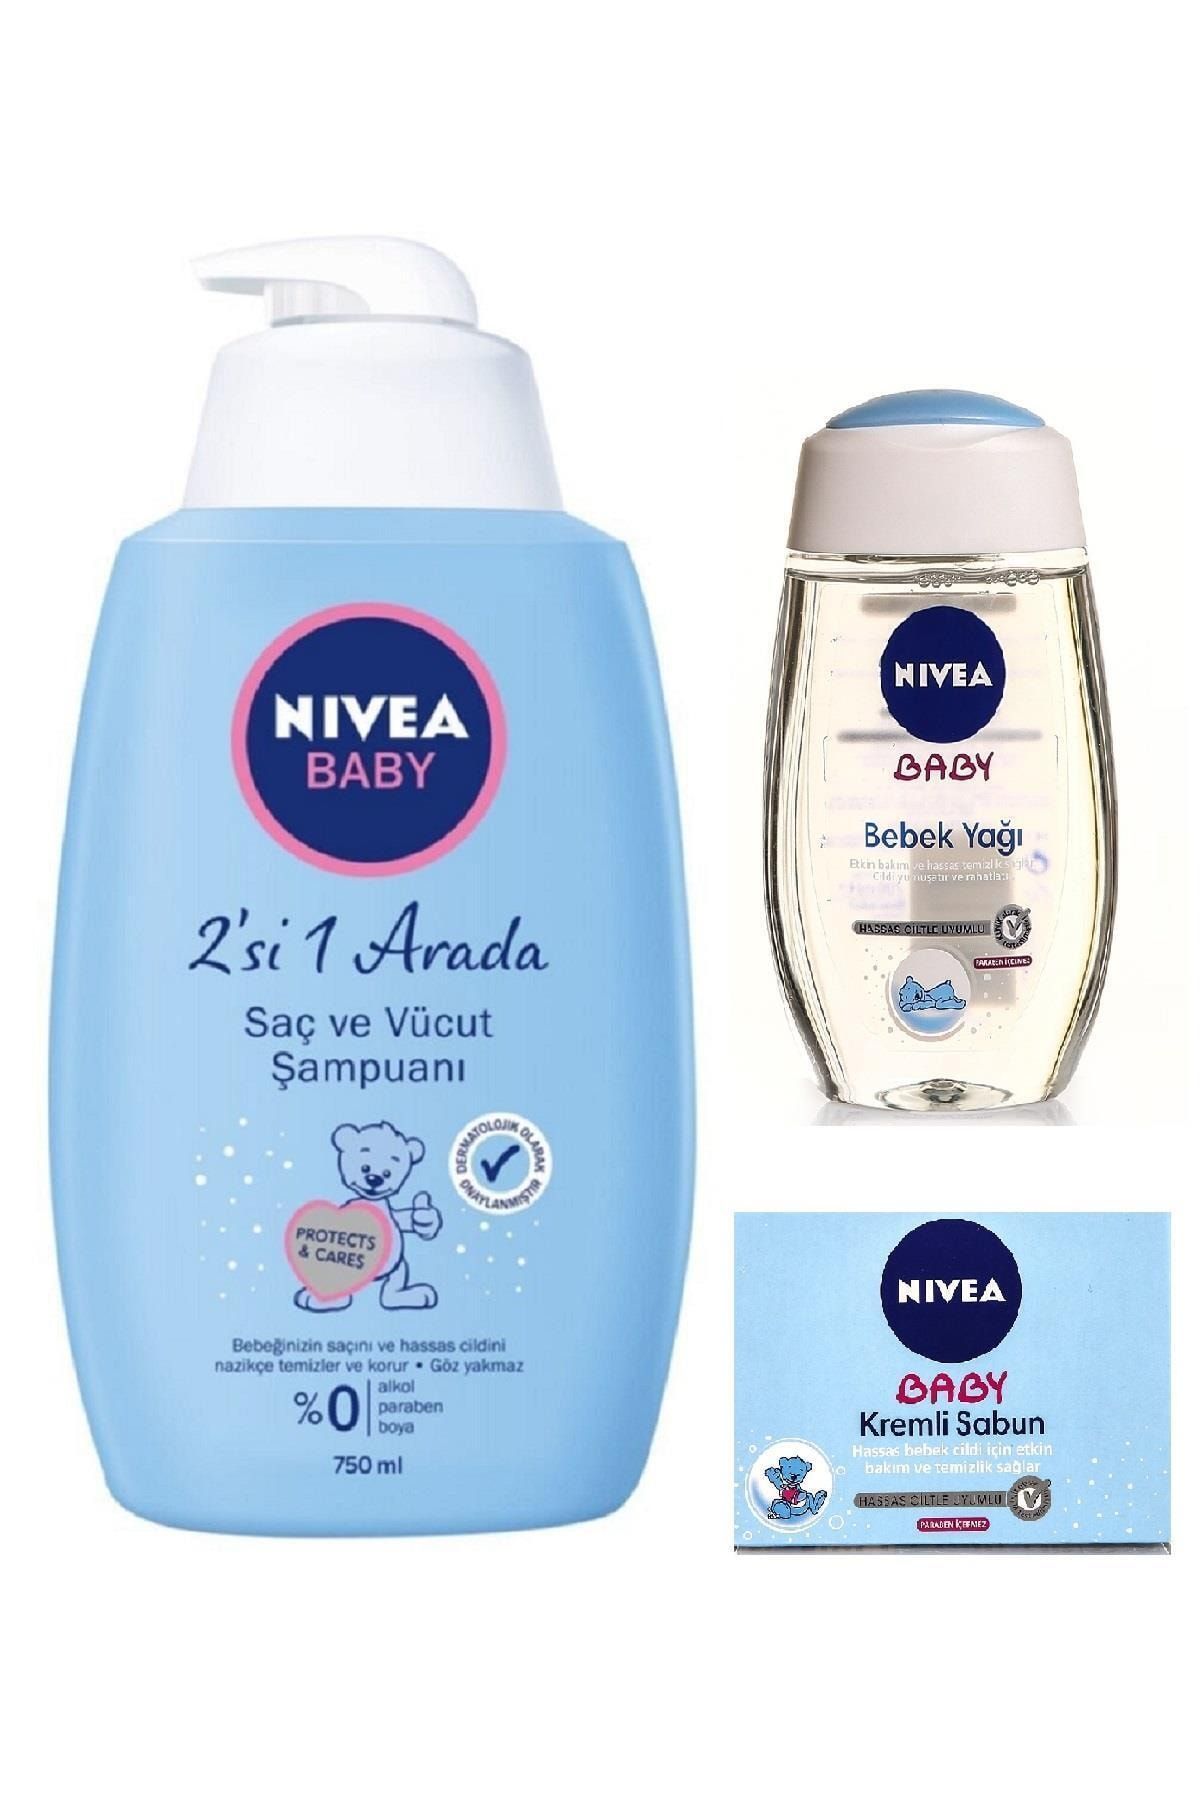 NIVEA Baby 2'si 1 Arada Saç Ve Vücut Şampuanı & Bebek Yağı & Kremli Sabun Seti